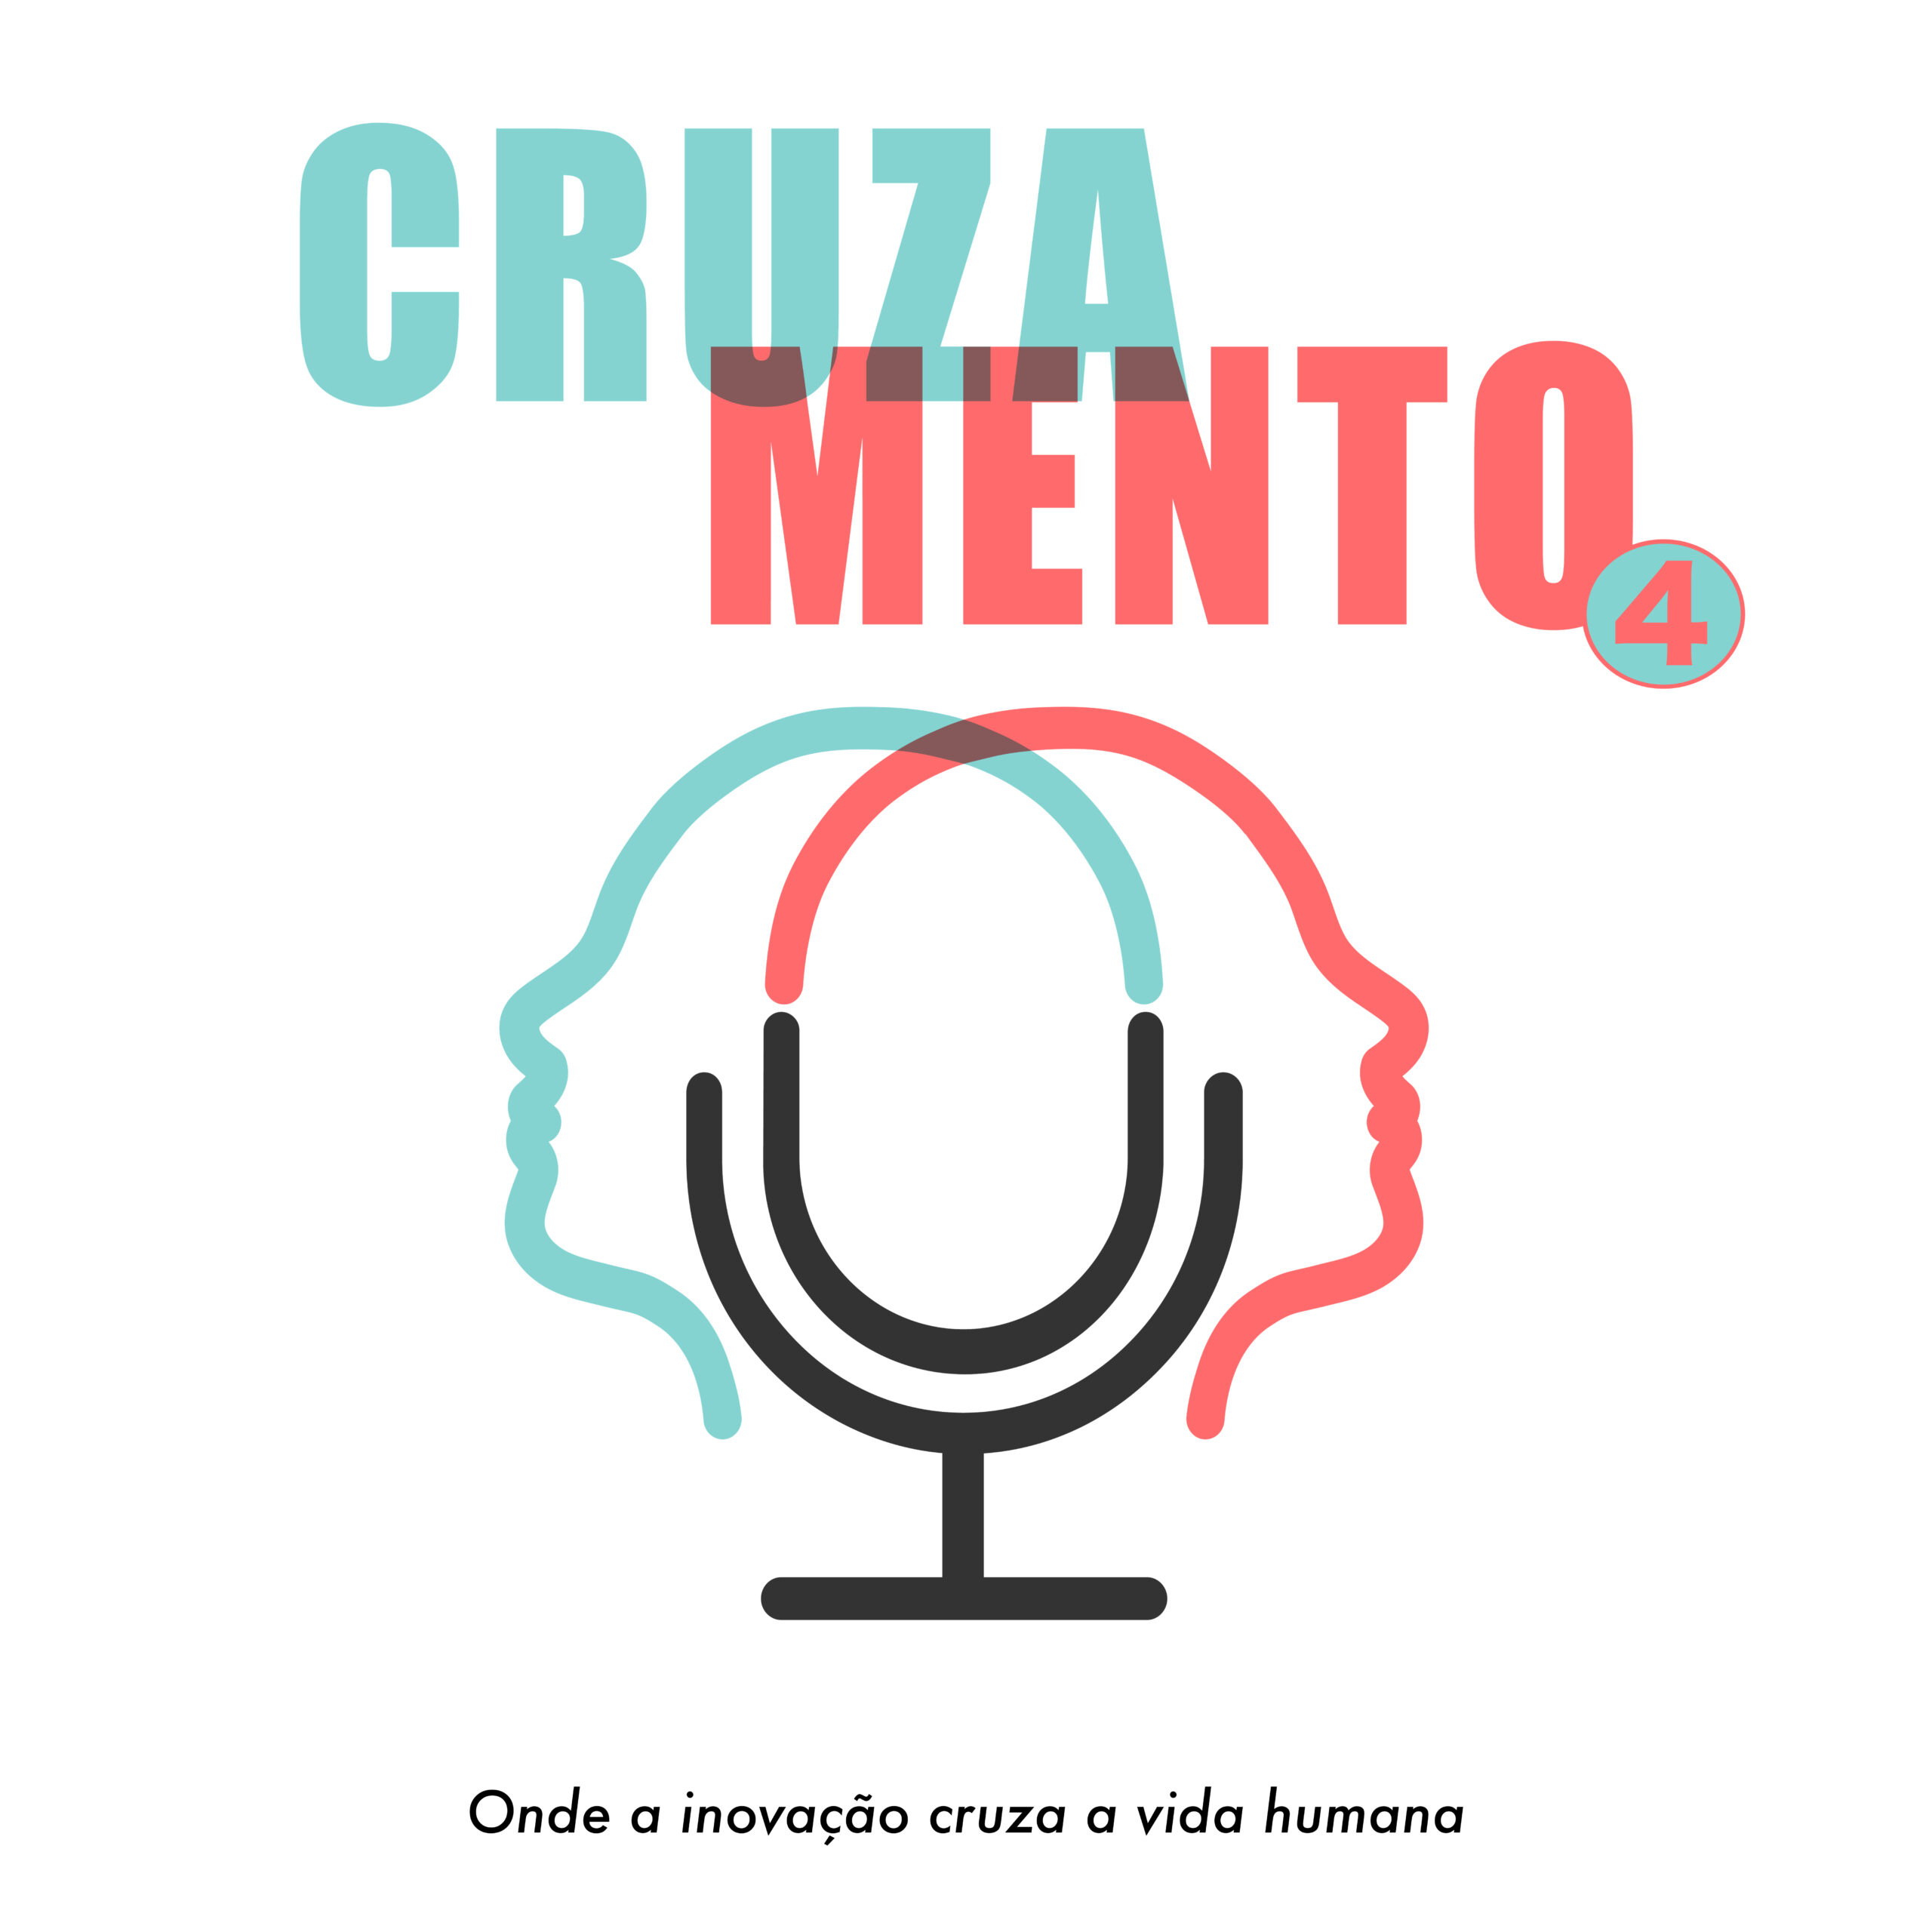 (c) Cruzamentopodcast.com